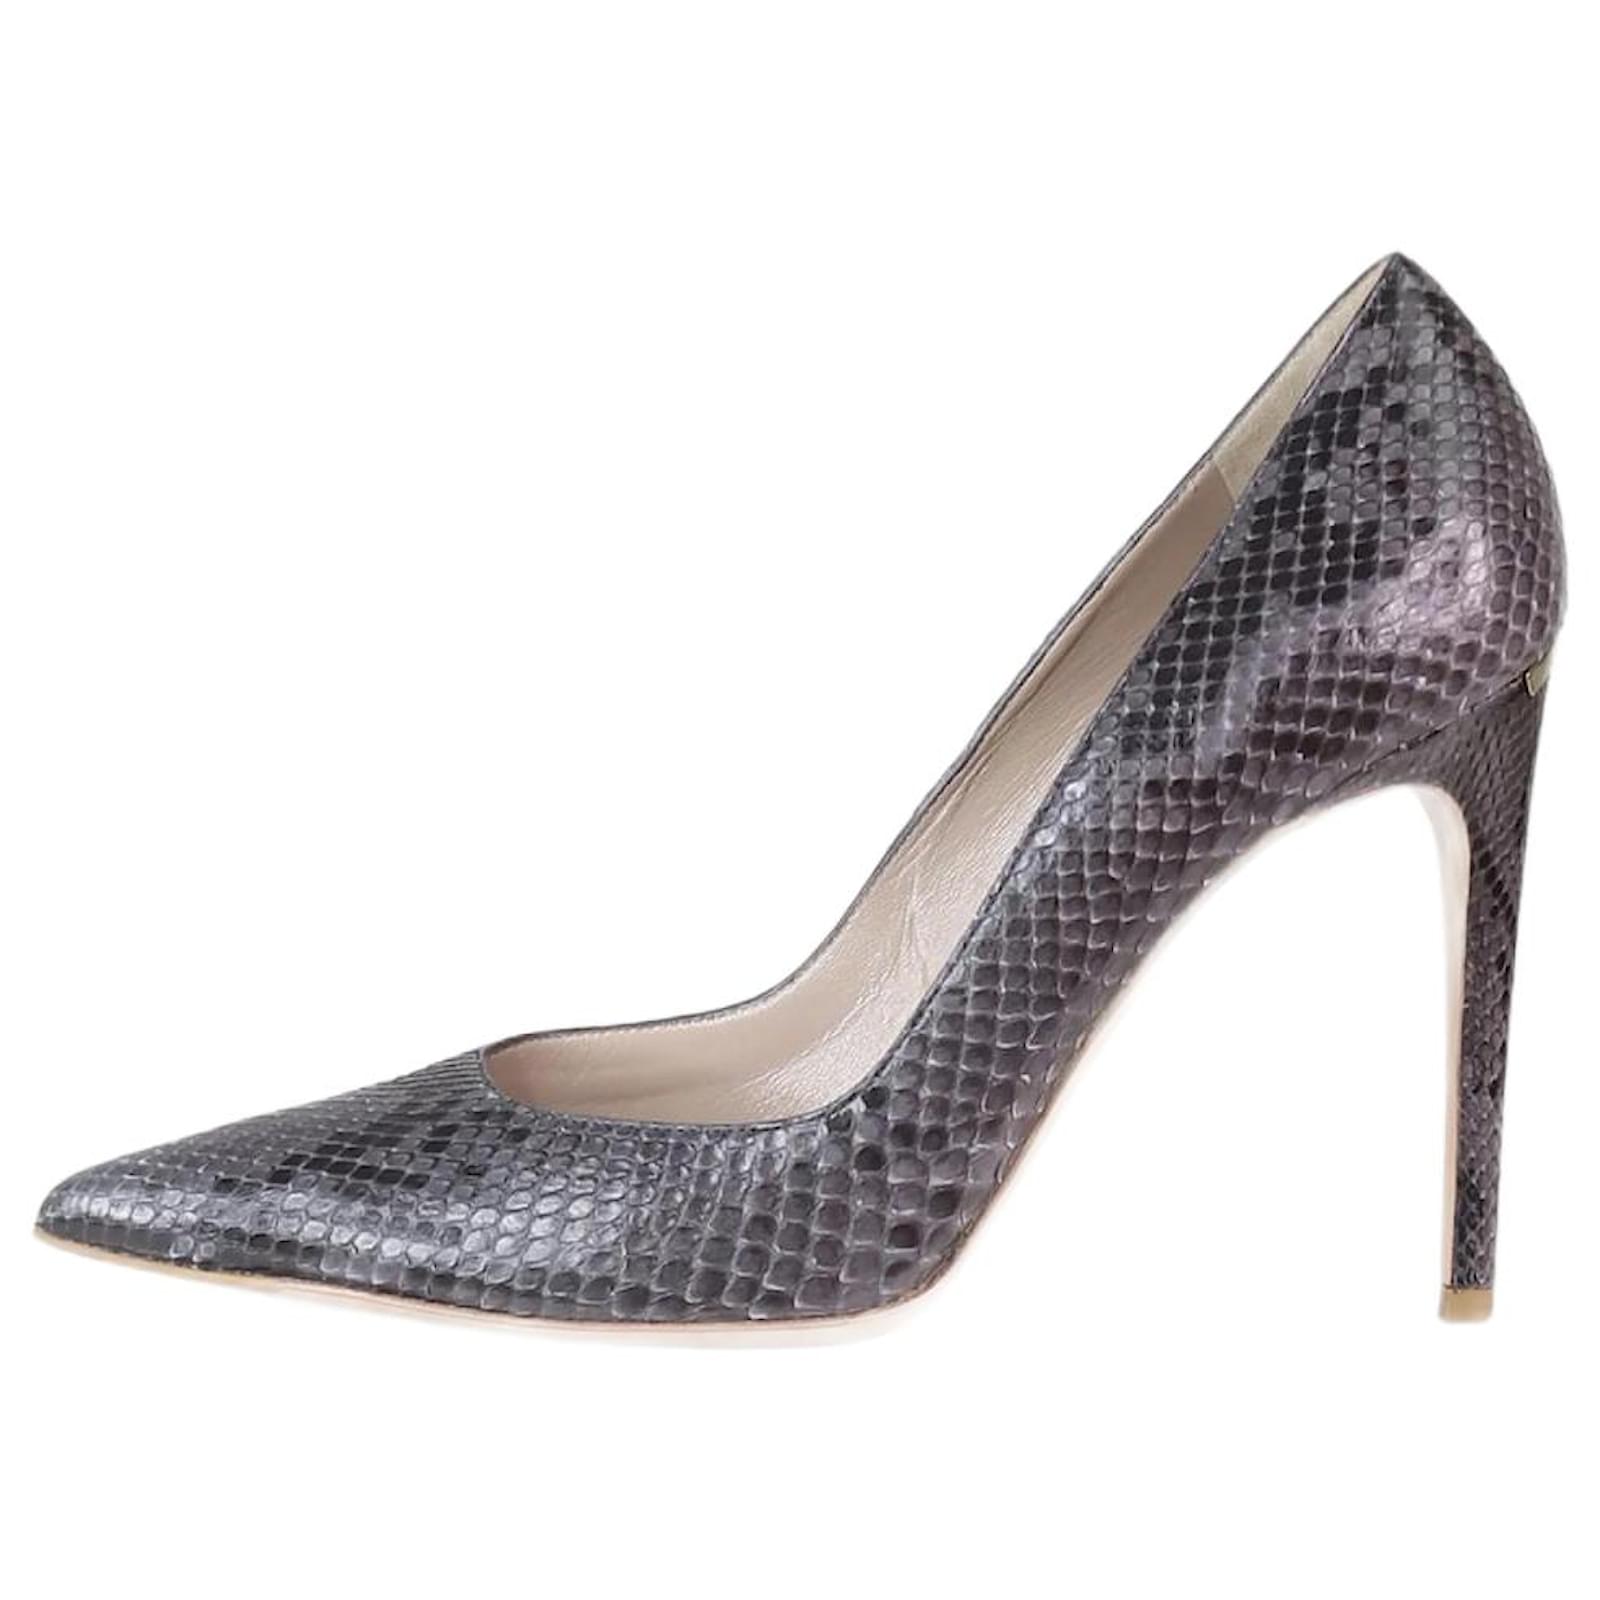 Joie Abbott Heels Womens 40 / 10 Gray Silver Leather Snakeskin Stiletto  Open Toe | eBay